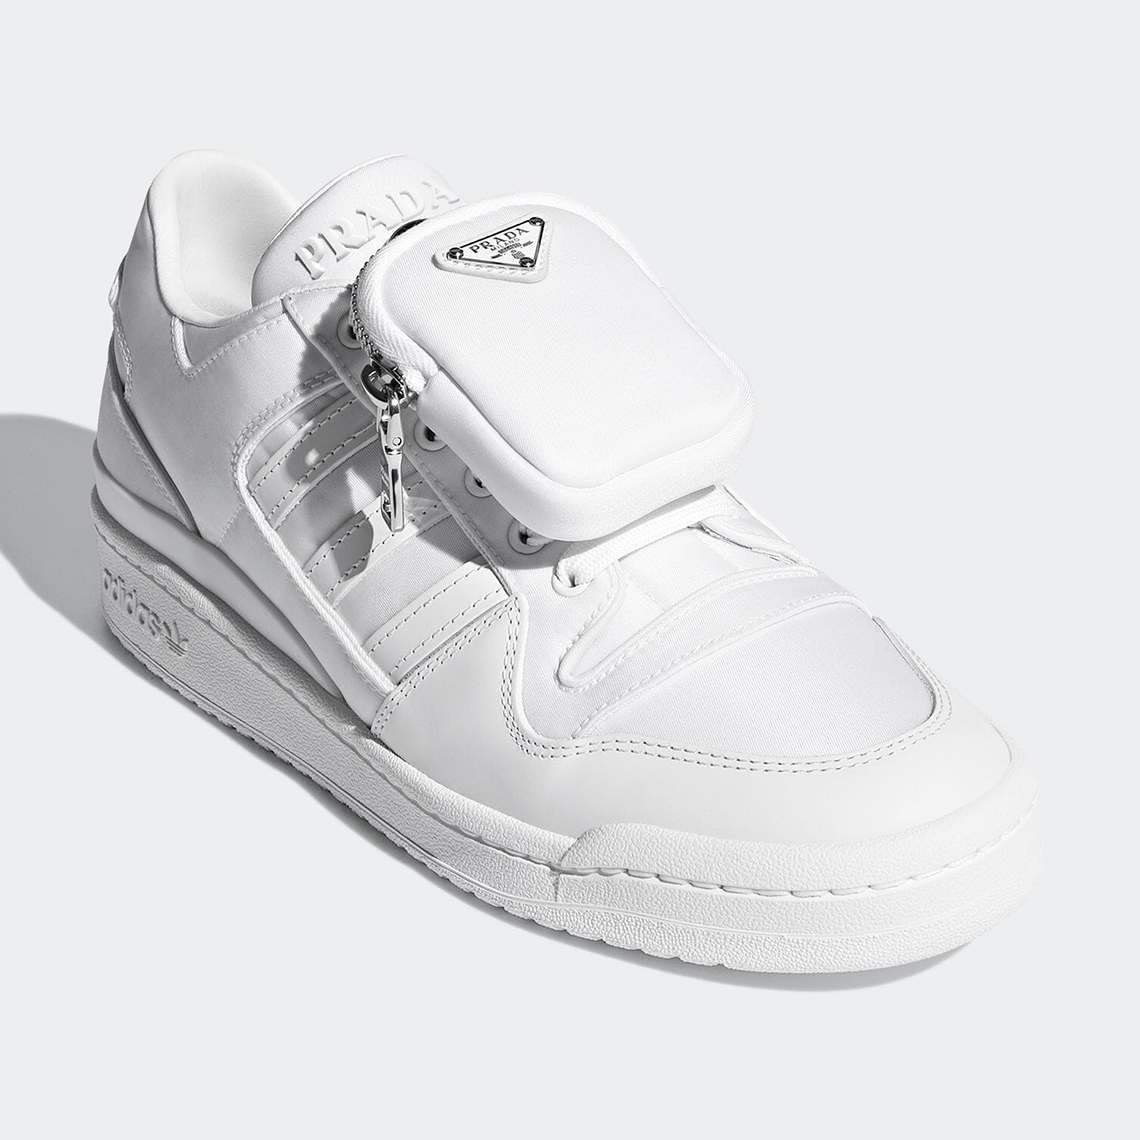 Prada For Adidas Forum Lo Re Nylon Core White Gy7042 8